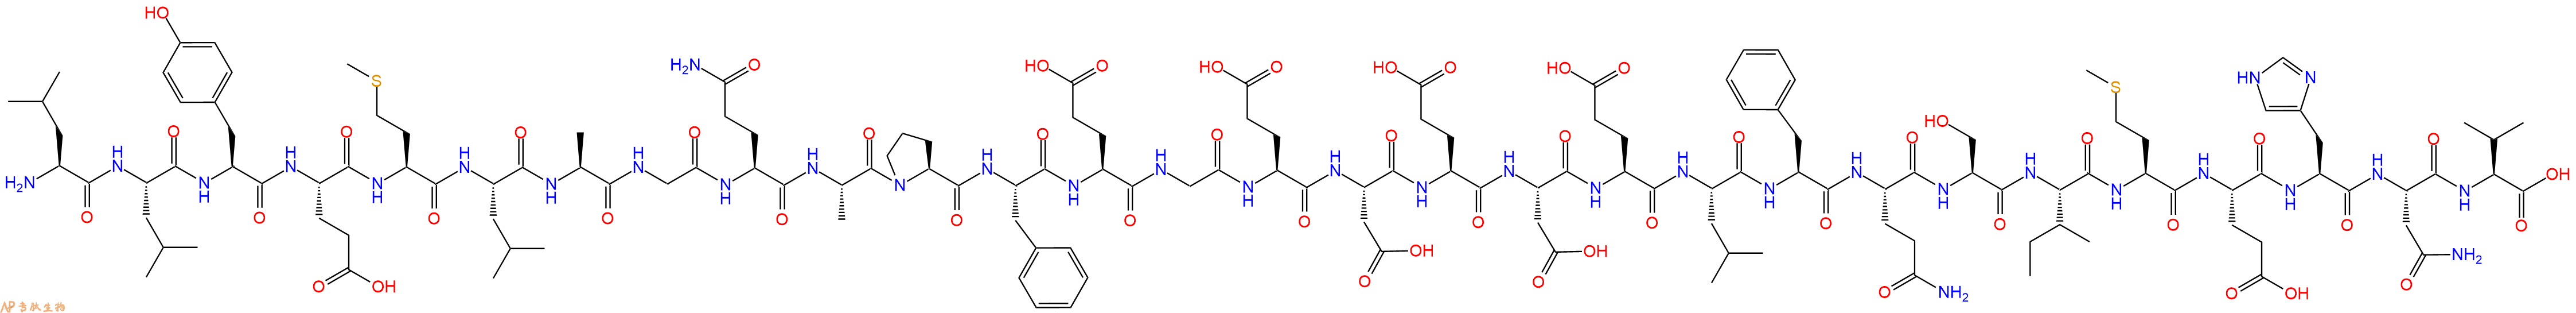 专肽生物产品蛋白激酶C片段 Protein Kinase C(530-558)